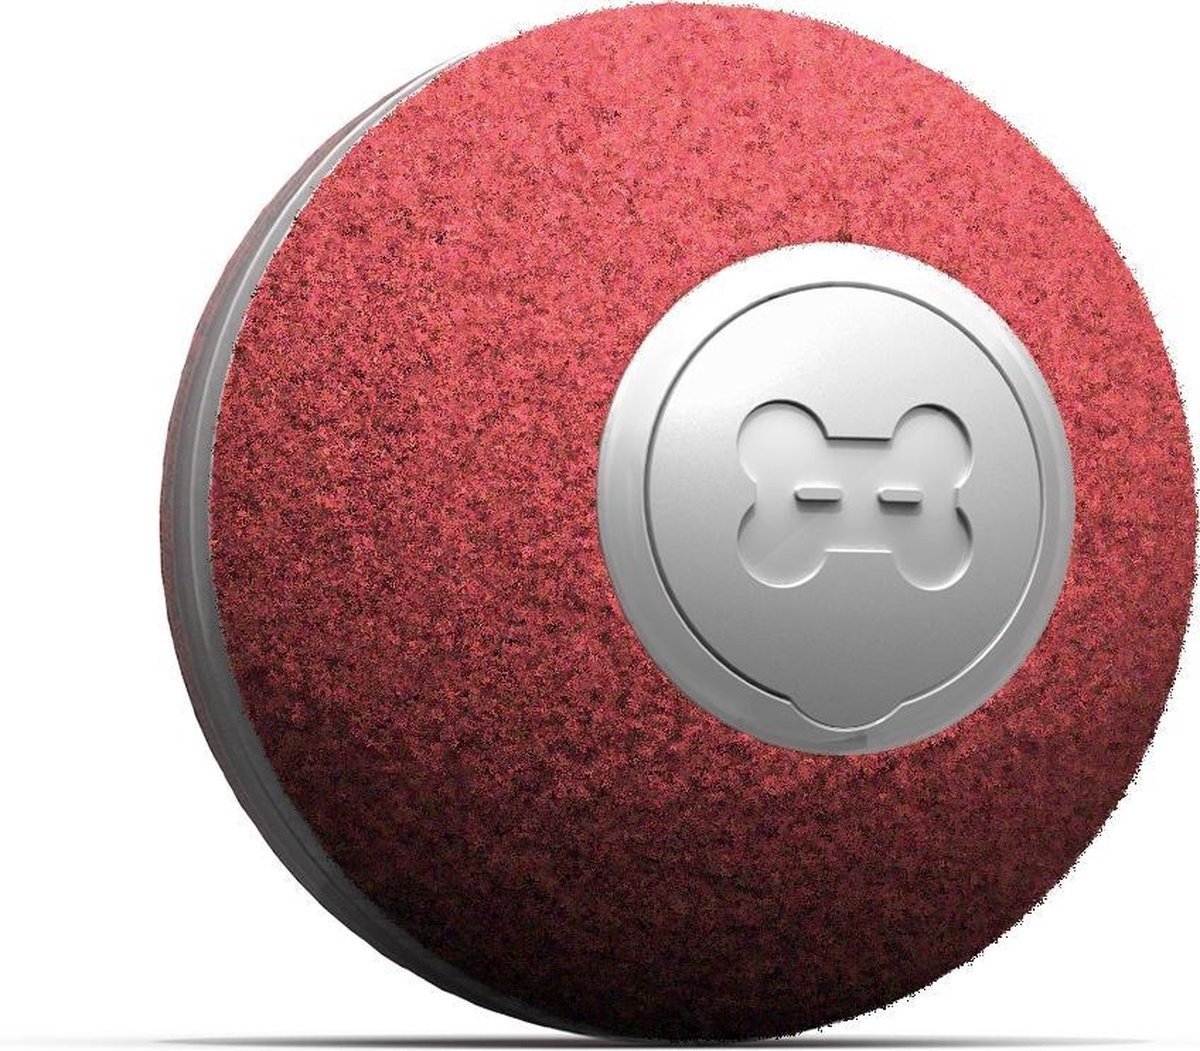 Interaktiver günstig Kaufen-Cheerble mini ball 2.0 - Intelligenter interaktiver selbstrollender Ball für Katzen - 3 Spielmodi - Katzenspielzeug - USB aufladbar - Rot. Cheerble mini ball 2.0 - Intelligenter interaktiver selbstrollender Ball für Katzen - 3 Spielmodi - Katzen